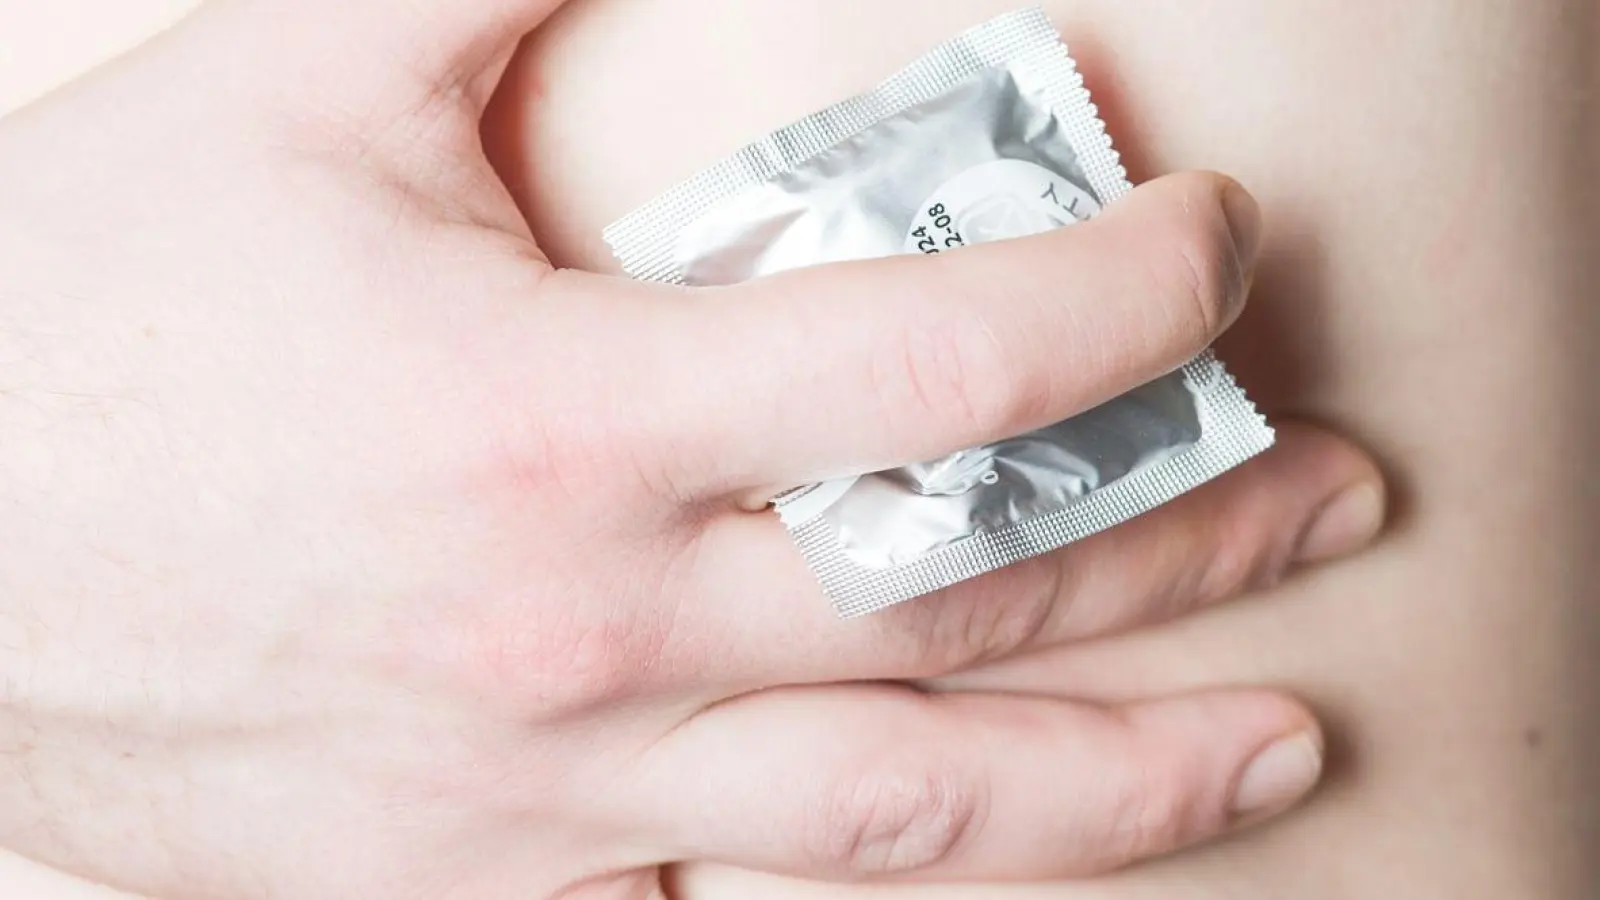 Ob&#39;s passt? Beim Kondomkauf kommt es auf die Größe an - und zwar nicht auf die Länge, sondern auf die Breite des Gummis. Diese Angabe findet man auf der Packung. (Foto: Christophe Gateau/dpa/dpa-tmn)